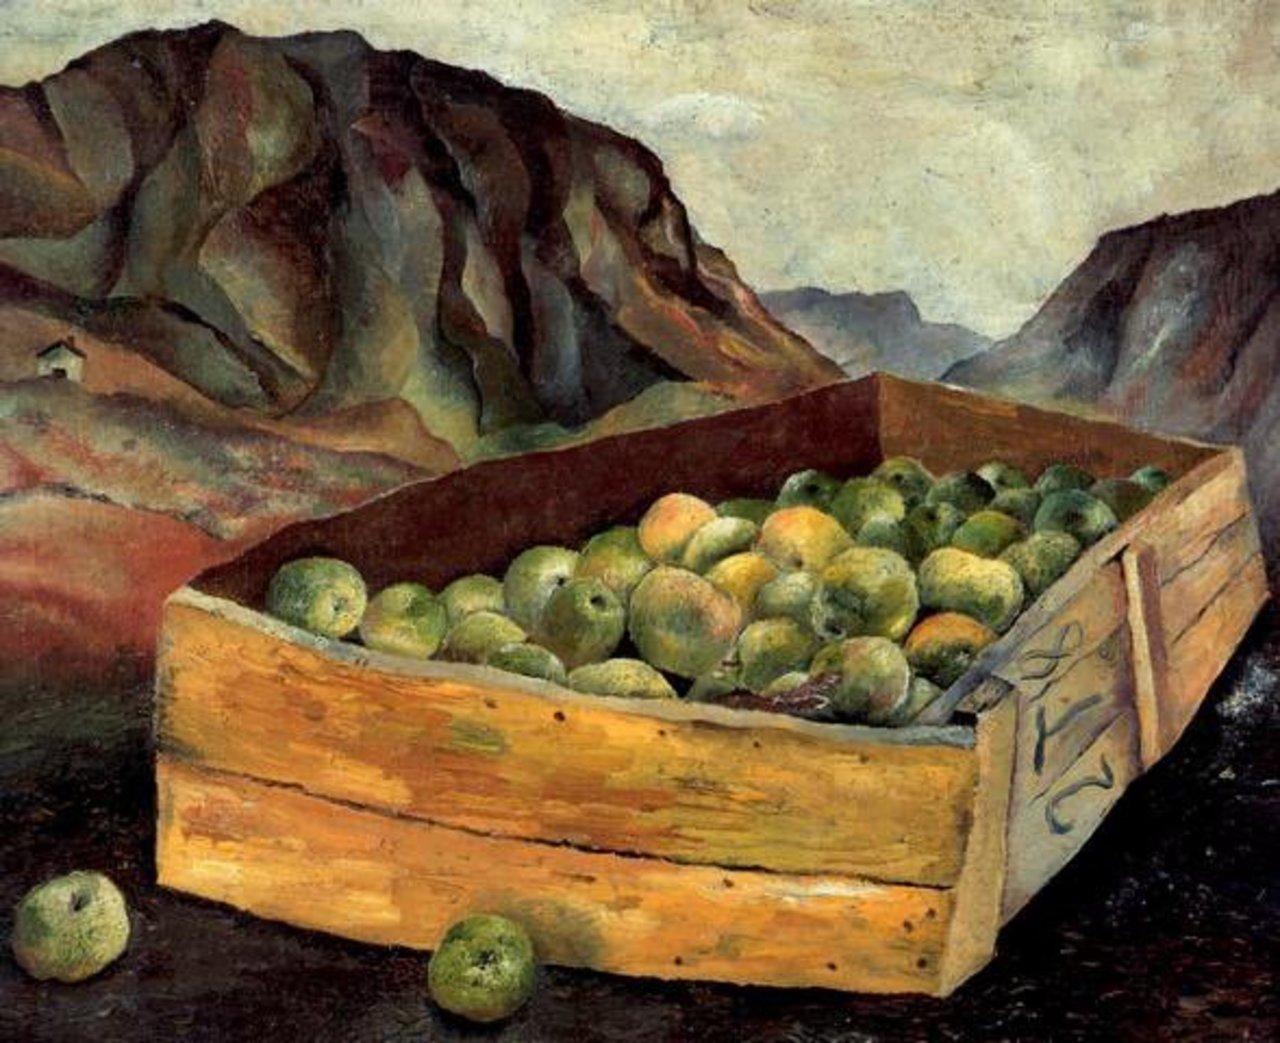 RT @janeadamswatts: “@artyyah: Box of Apples in WalesLucian Freud, 1939 http://bit.ly/18GCSaj https://t.co/42zLC3FuQR”@janeadamswatts  # LUCIAN FREUD